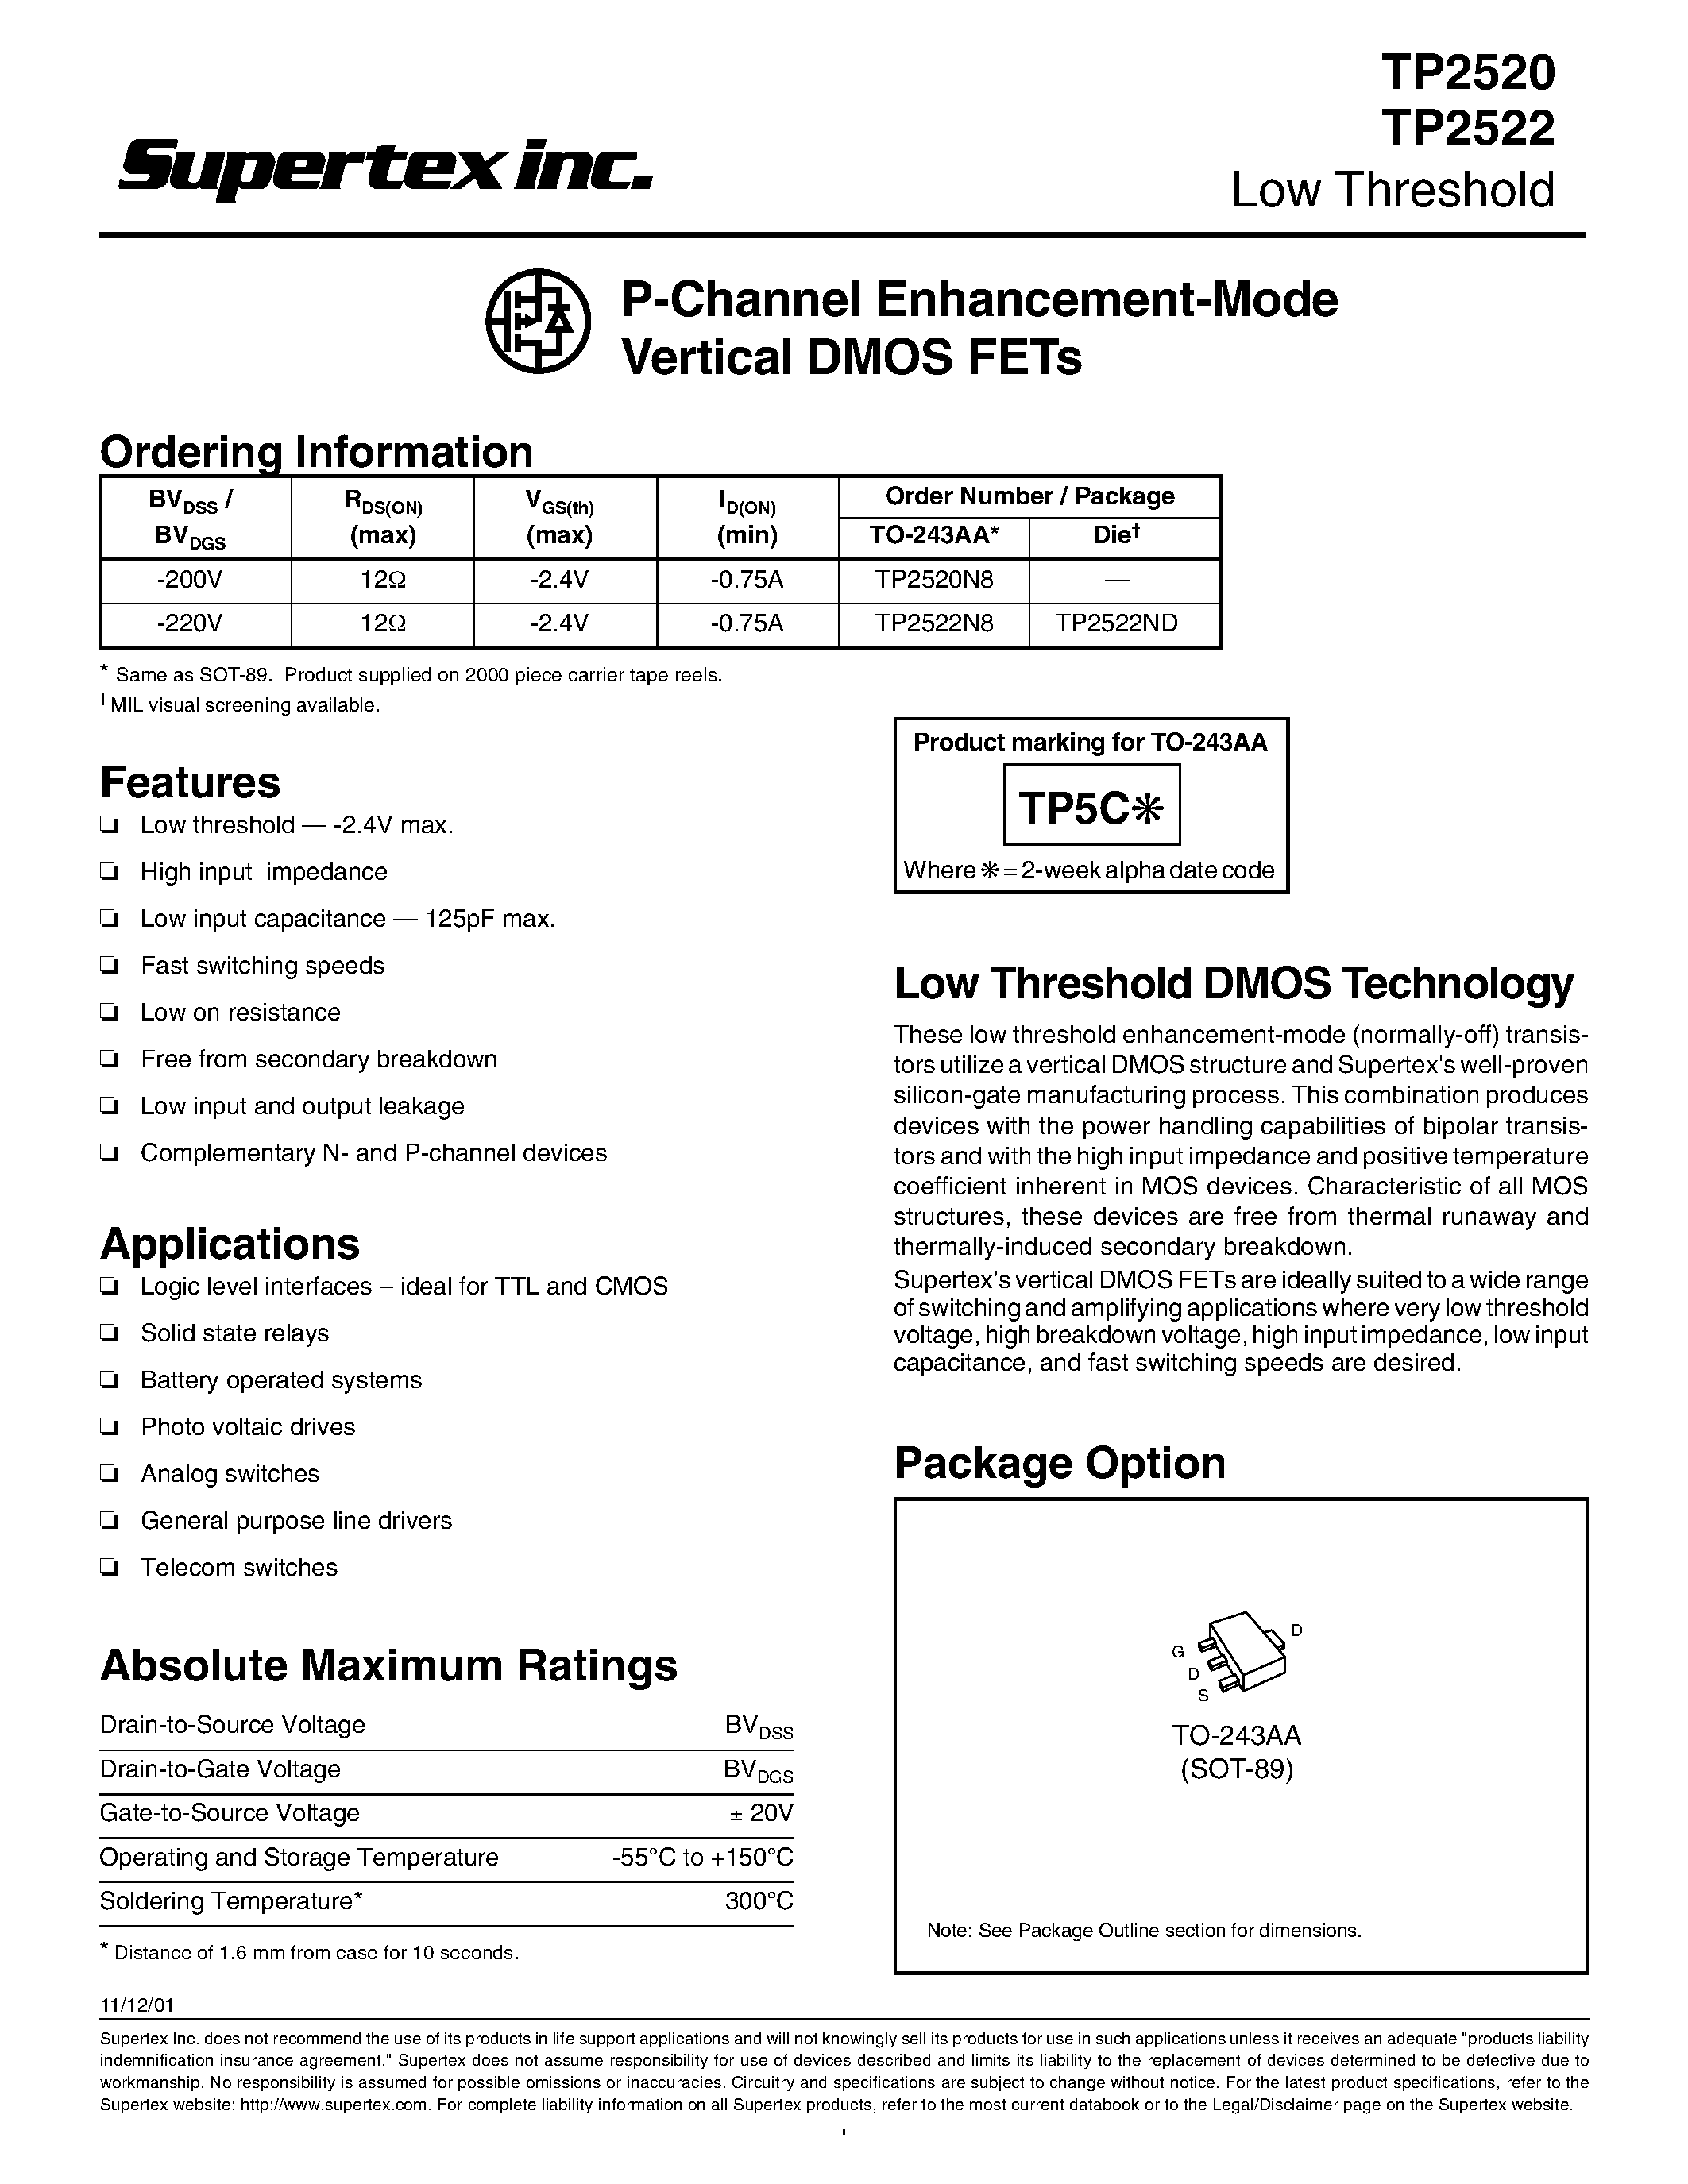 Даташит TP2522 - P-Channel Enhancement-Mode Vertical DMOS FETs страница 1